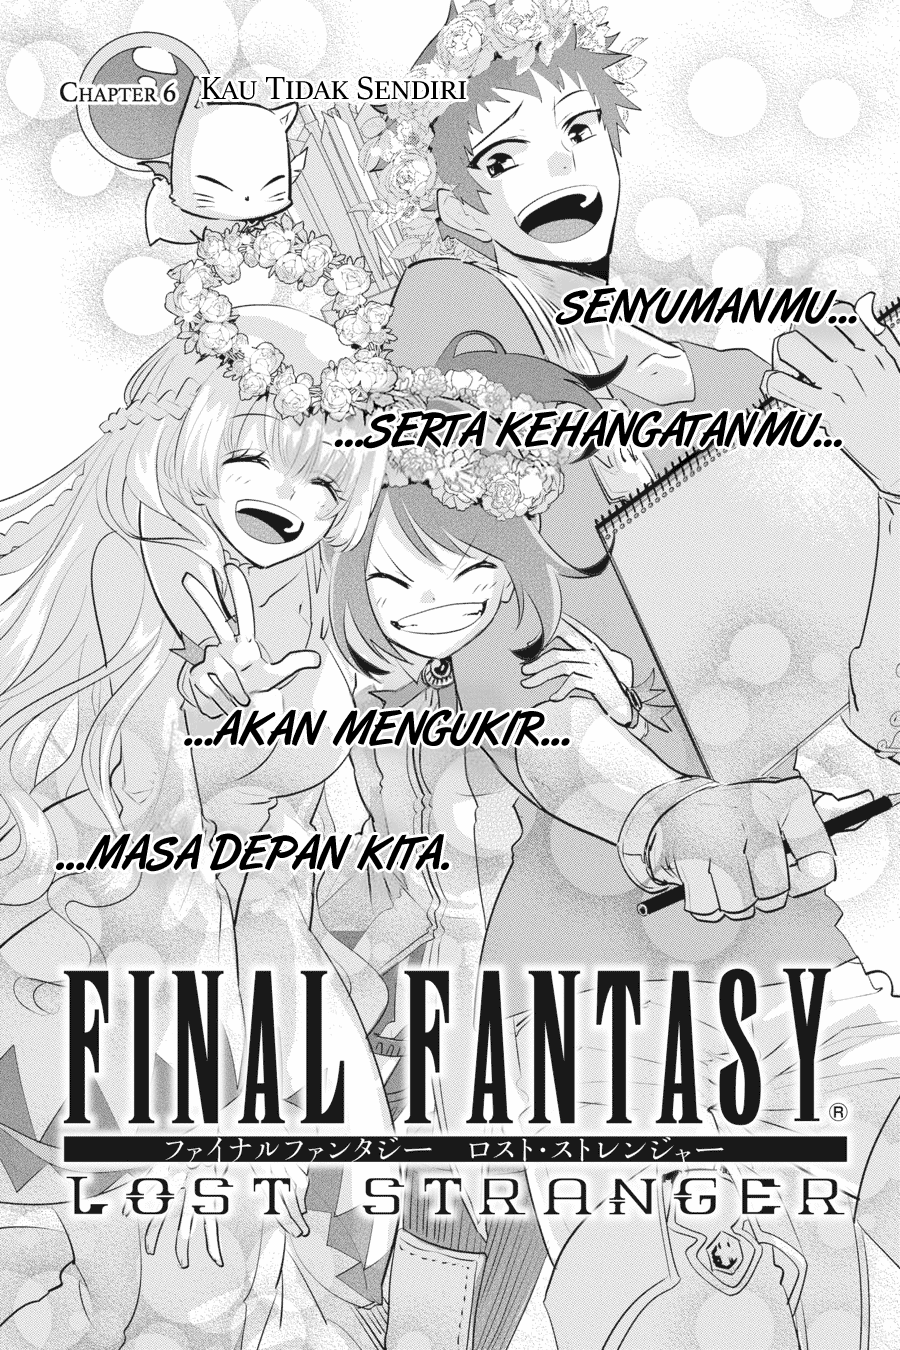 Final Fantasy: Lost Stranger Chapter 06